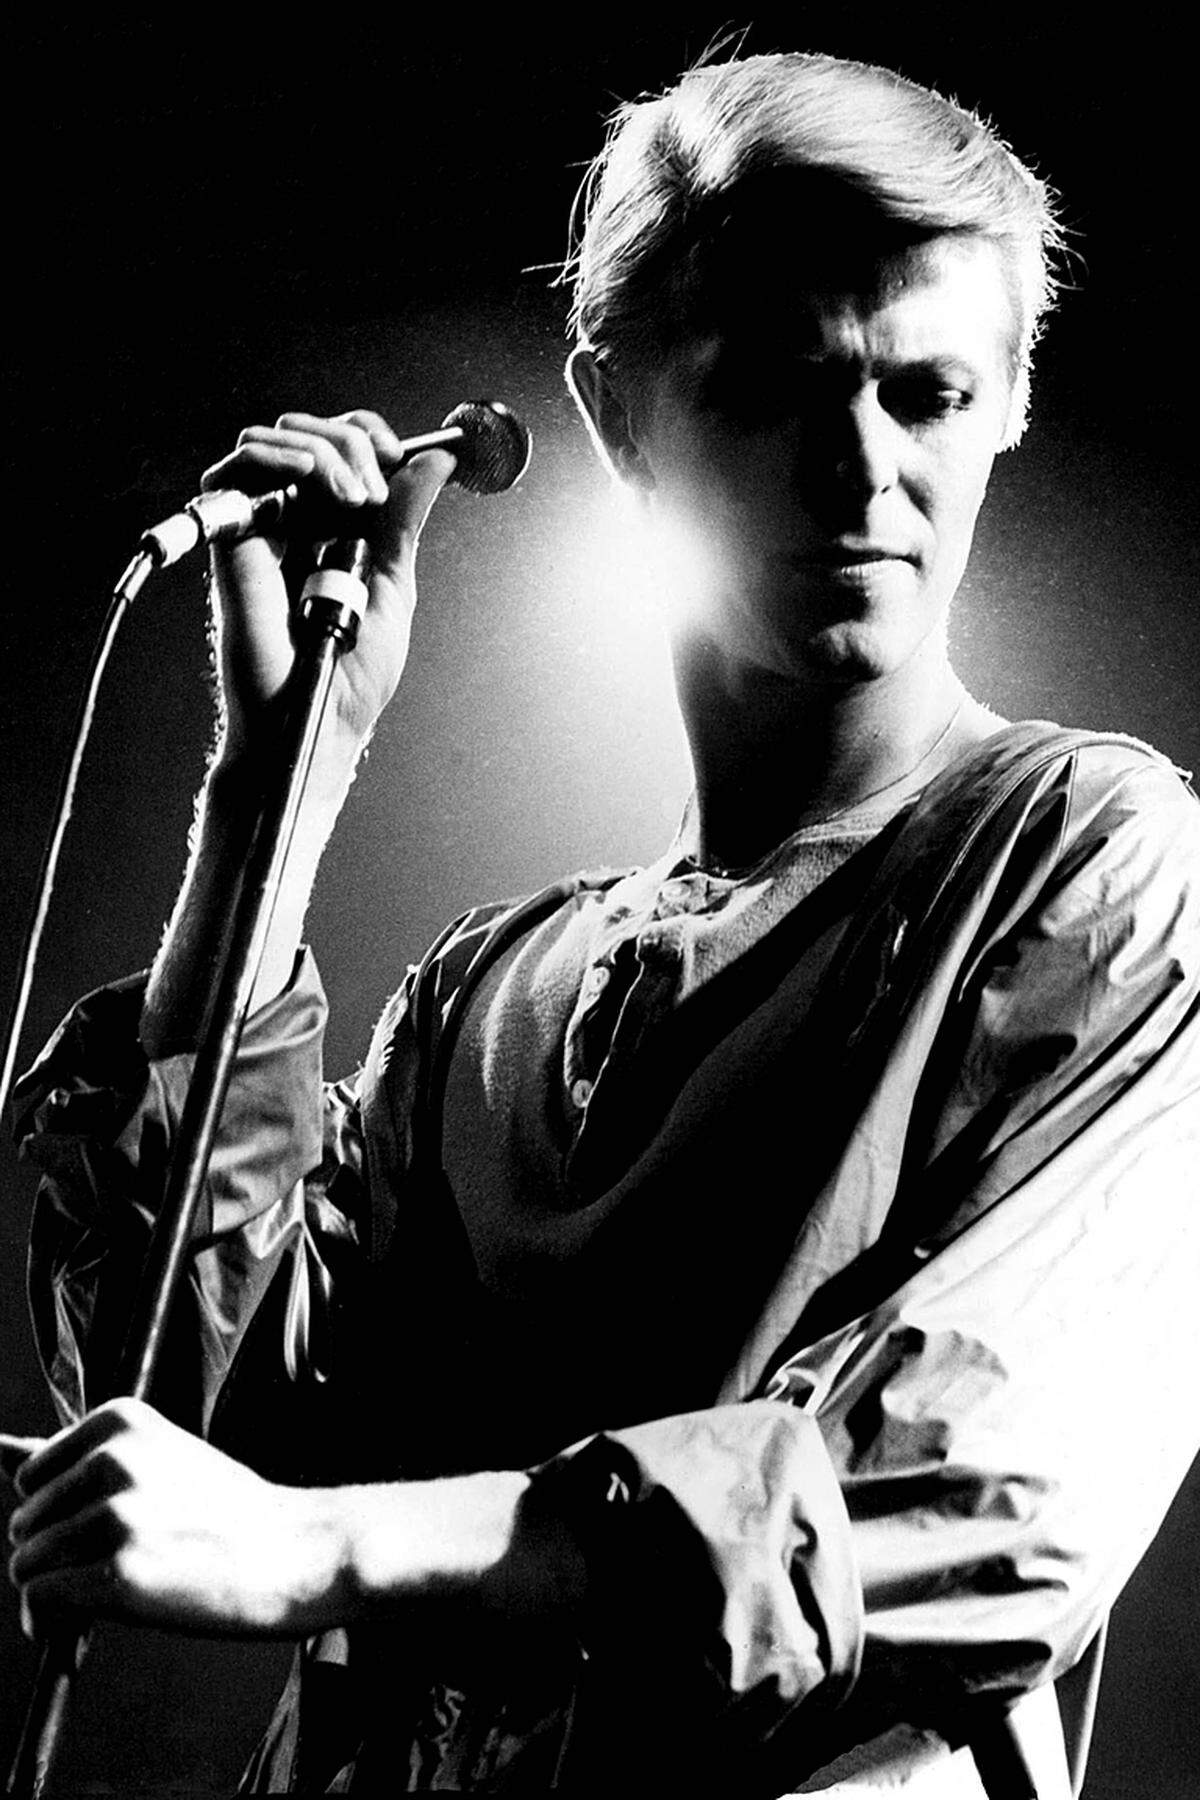 8. Jänner 1947 in London - 10. Jänner 2016 in New York Der "Thin White Duke" verstarb nach einem 18-monatigen Kampf gegen den Krebs im Kreise seiner Familie. Die Nachricht löste eine Schockwelle nicht nur in der Musikwelt aus, Bowie war einer der prägendsten Künstler seiner Generation. Kurz vor seinem Tod brachte er noch das Album "Blackstar" heraus - es erschien an seinem 69. Geburtstag. &gt;&gt; 21 Meisterwerke einer Pop-Ikone